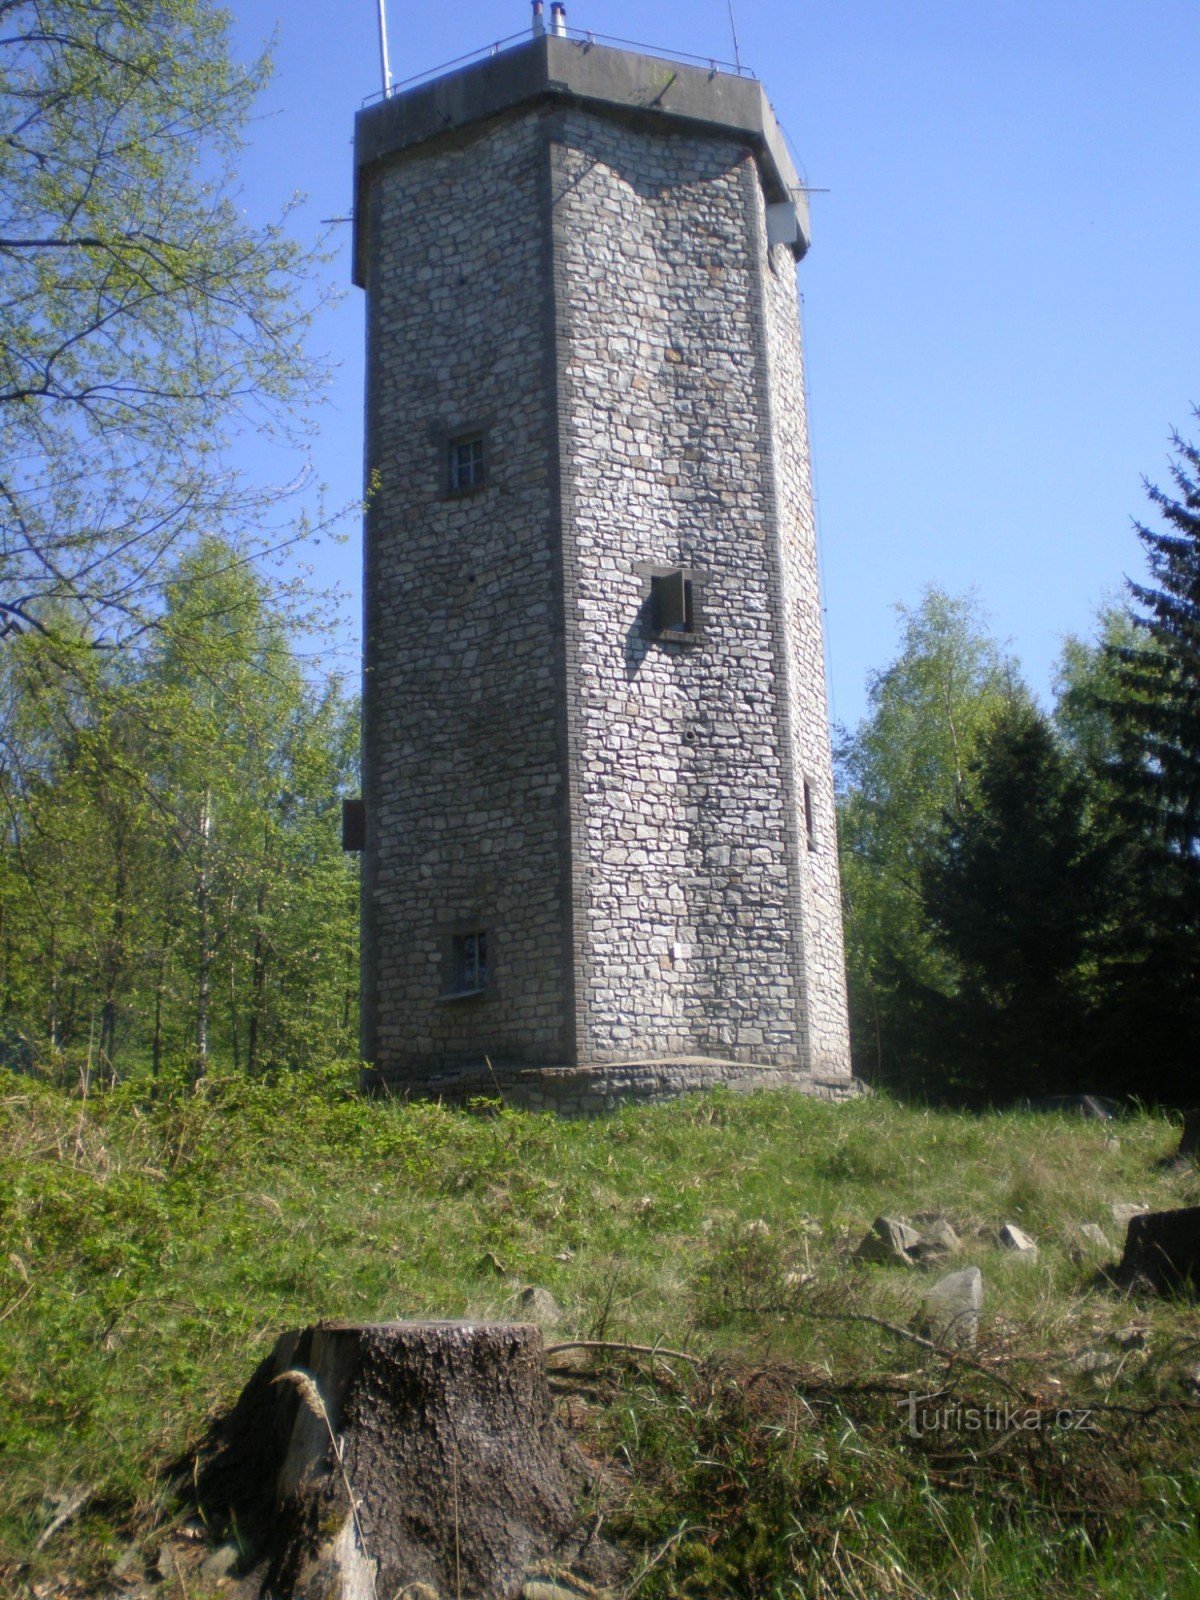 Studený vrch (660 m), torre di osservazione